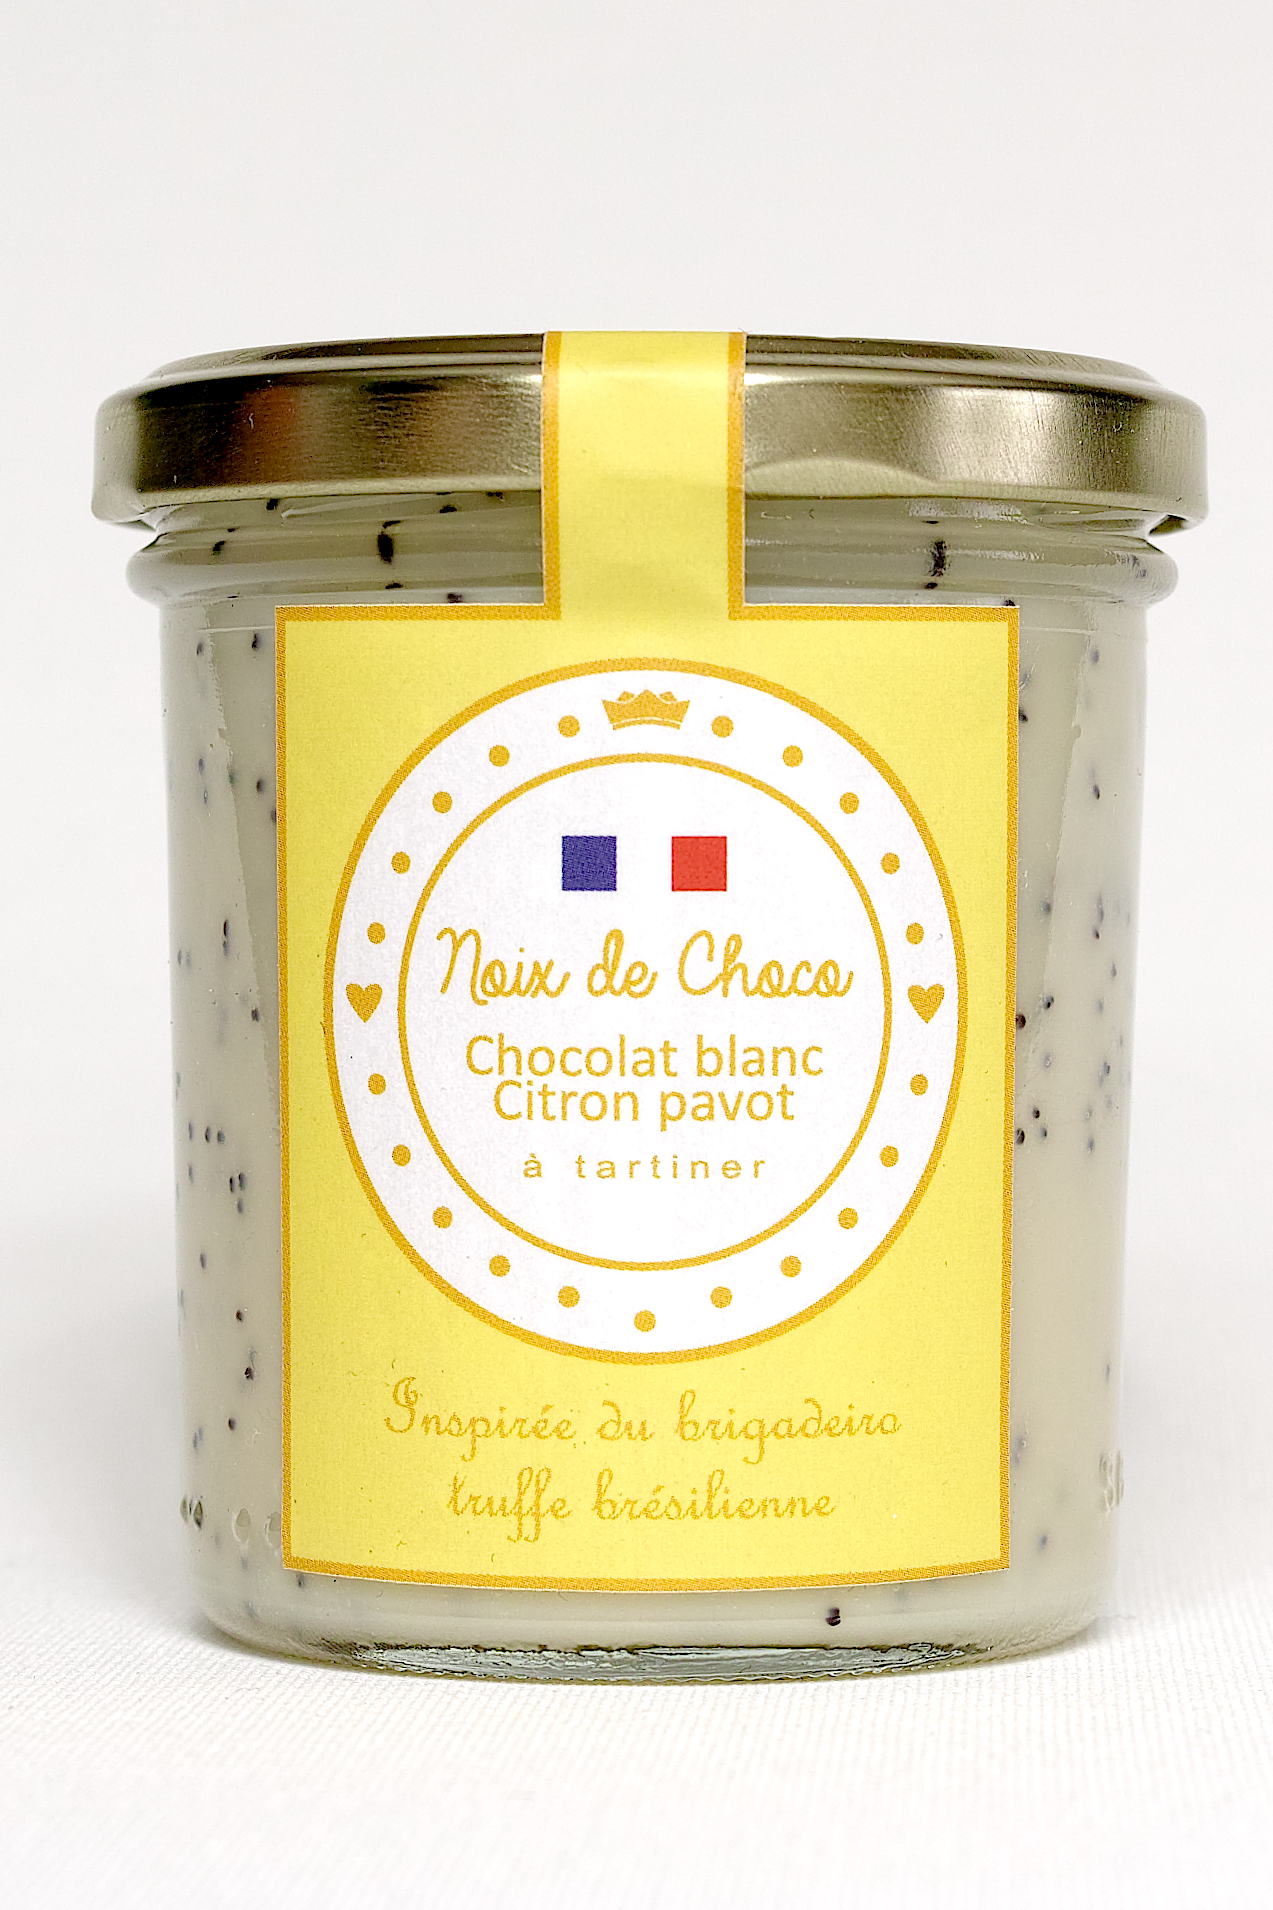 NOIX DE CHOCO - Pâte à tartiner chocolat blanc, citron et pavot